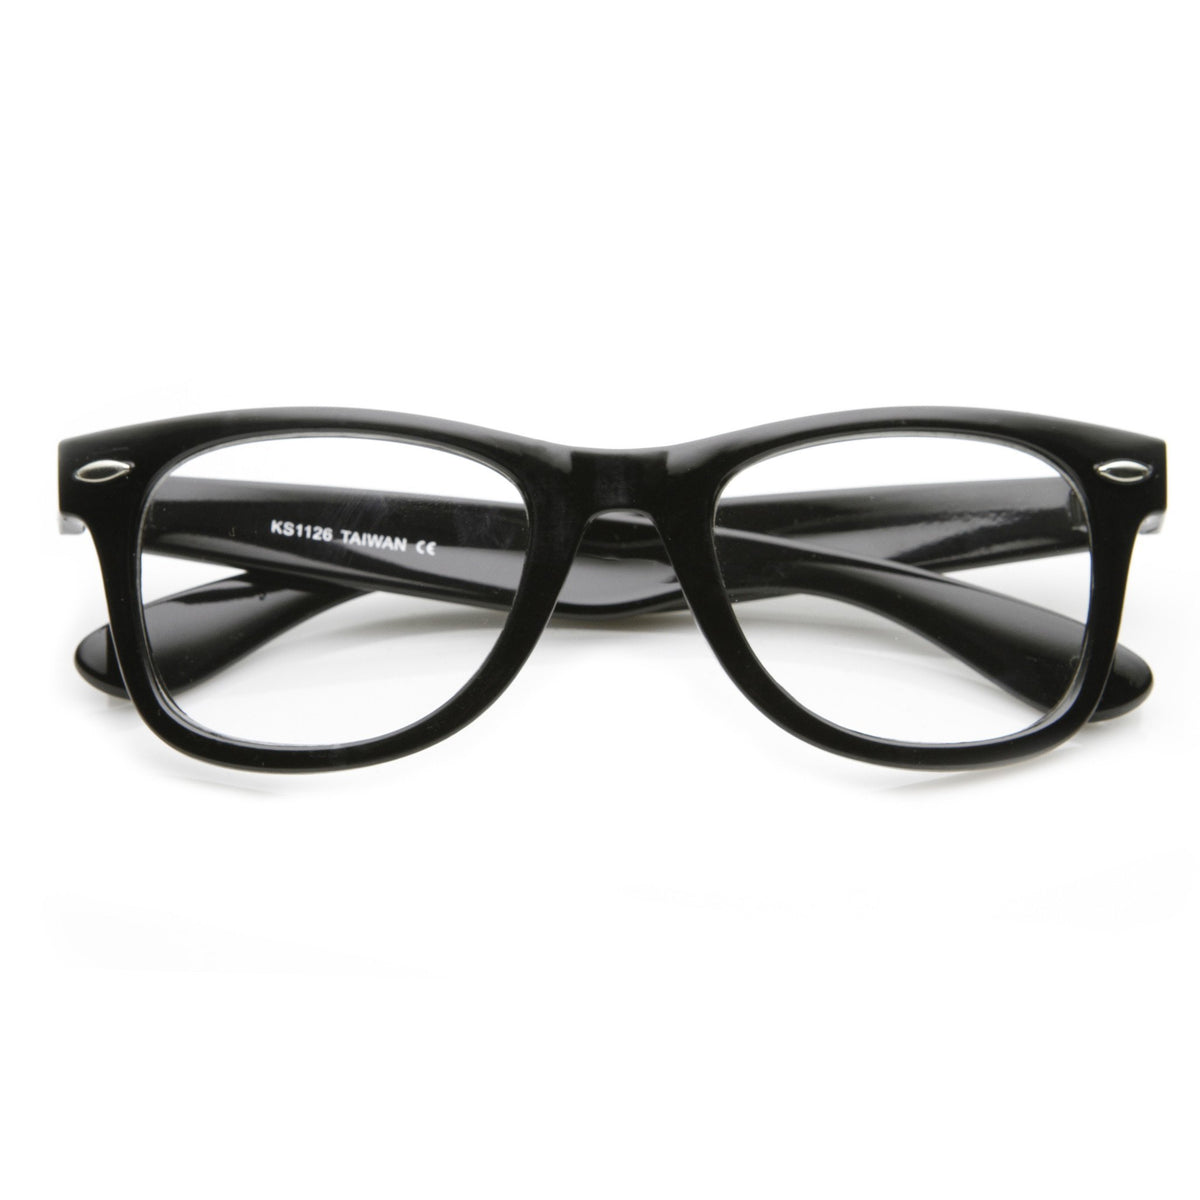 Retro Classic Horned Rim Frame RX Optical Clear Lens Glasses